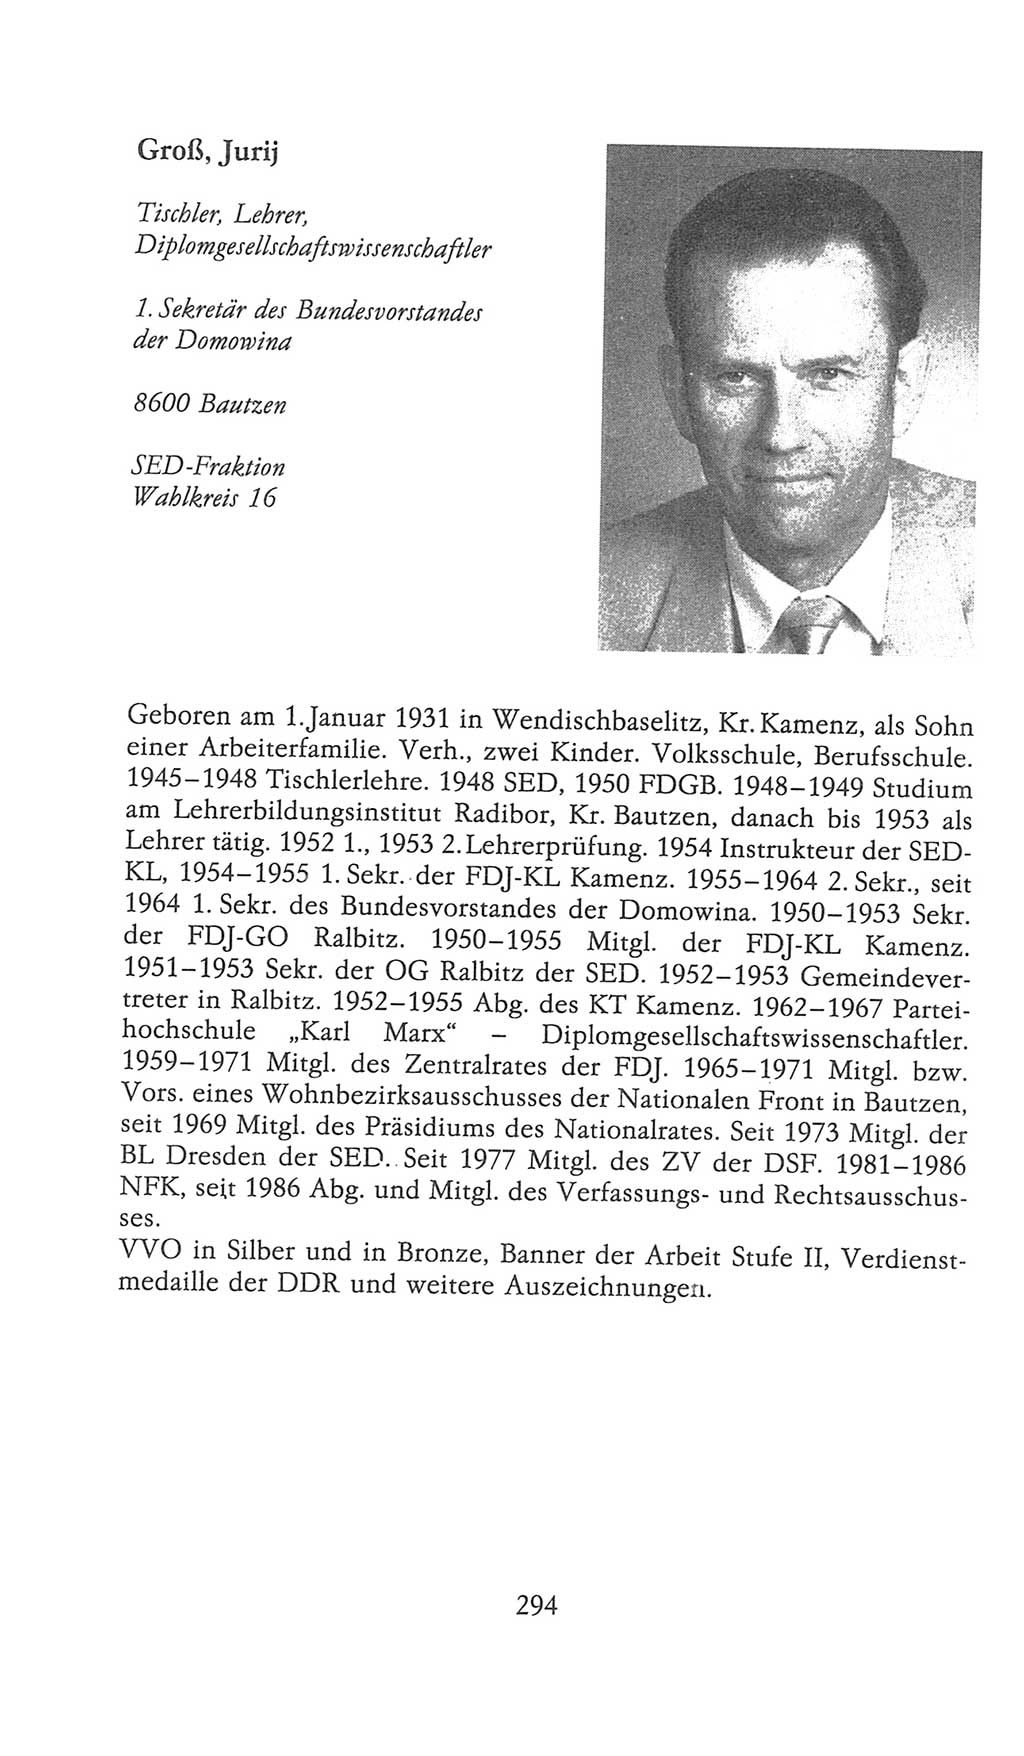 Volkskammer (VK) der Deutschen Demokratischen Republik (DDR), 9. Wahlperiode 1986-1990, Seite 294 (VK. DDR 9. WP. 1986-1990, S. 294)